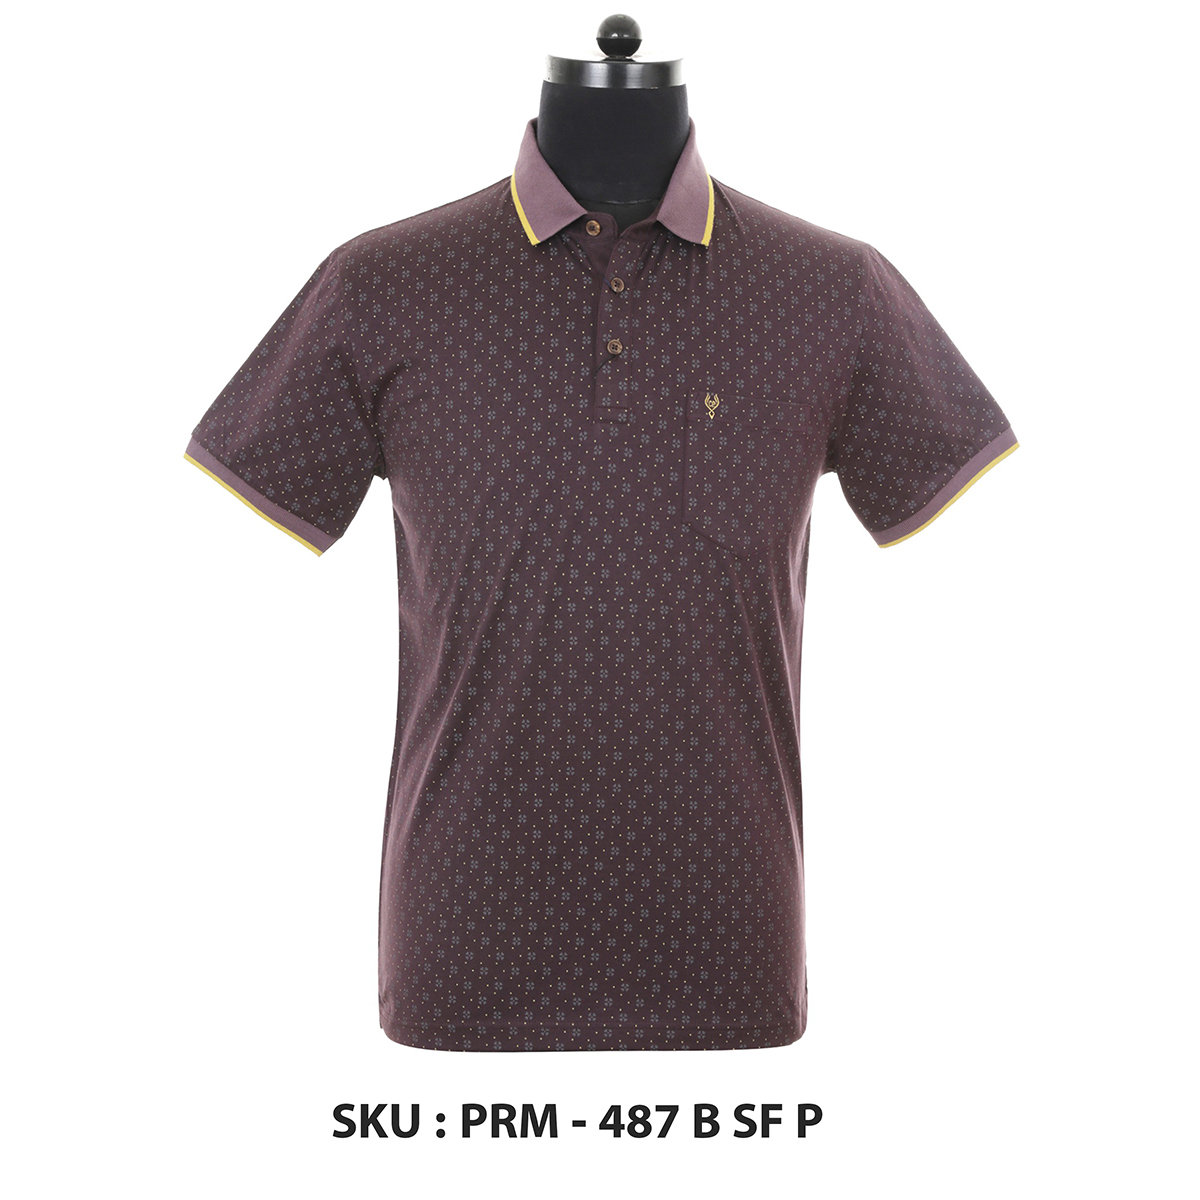 Classic Polo Mens T Shirt Prm - 487 B Sf P Brown XL